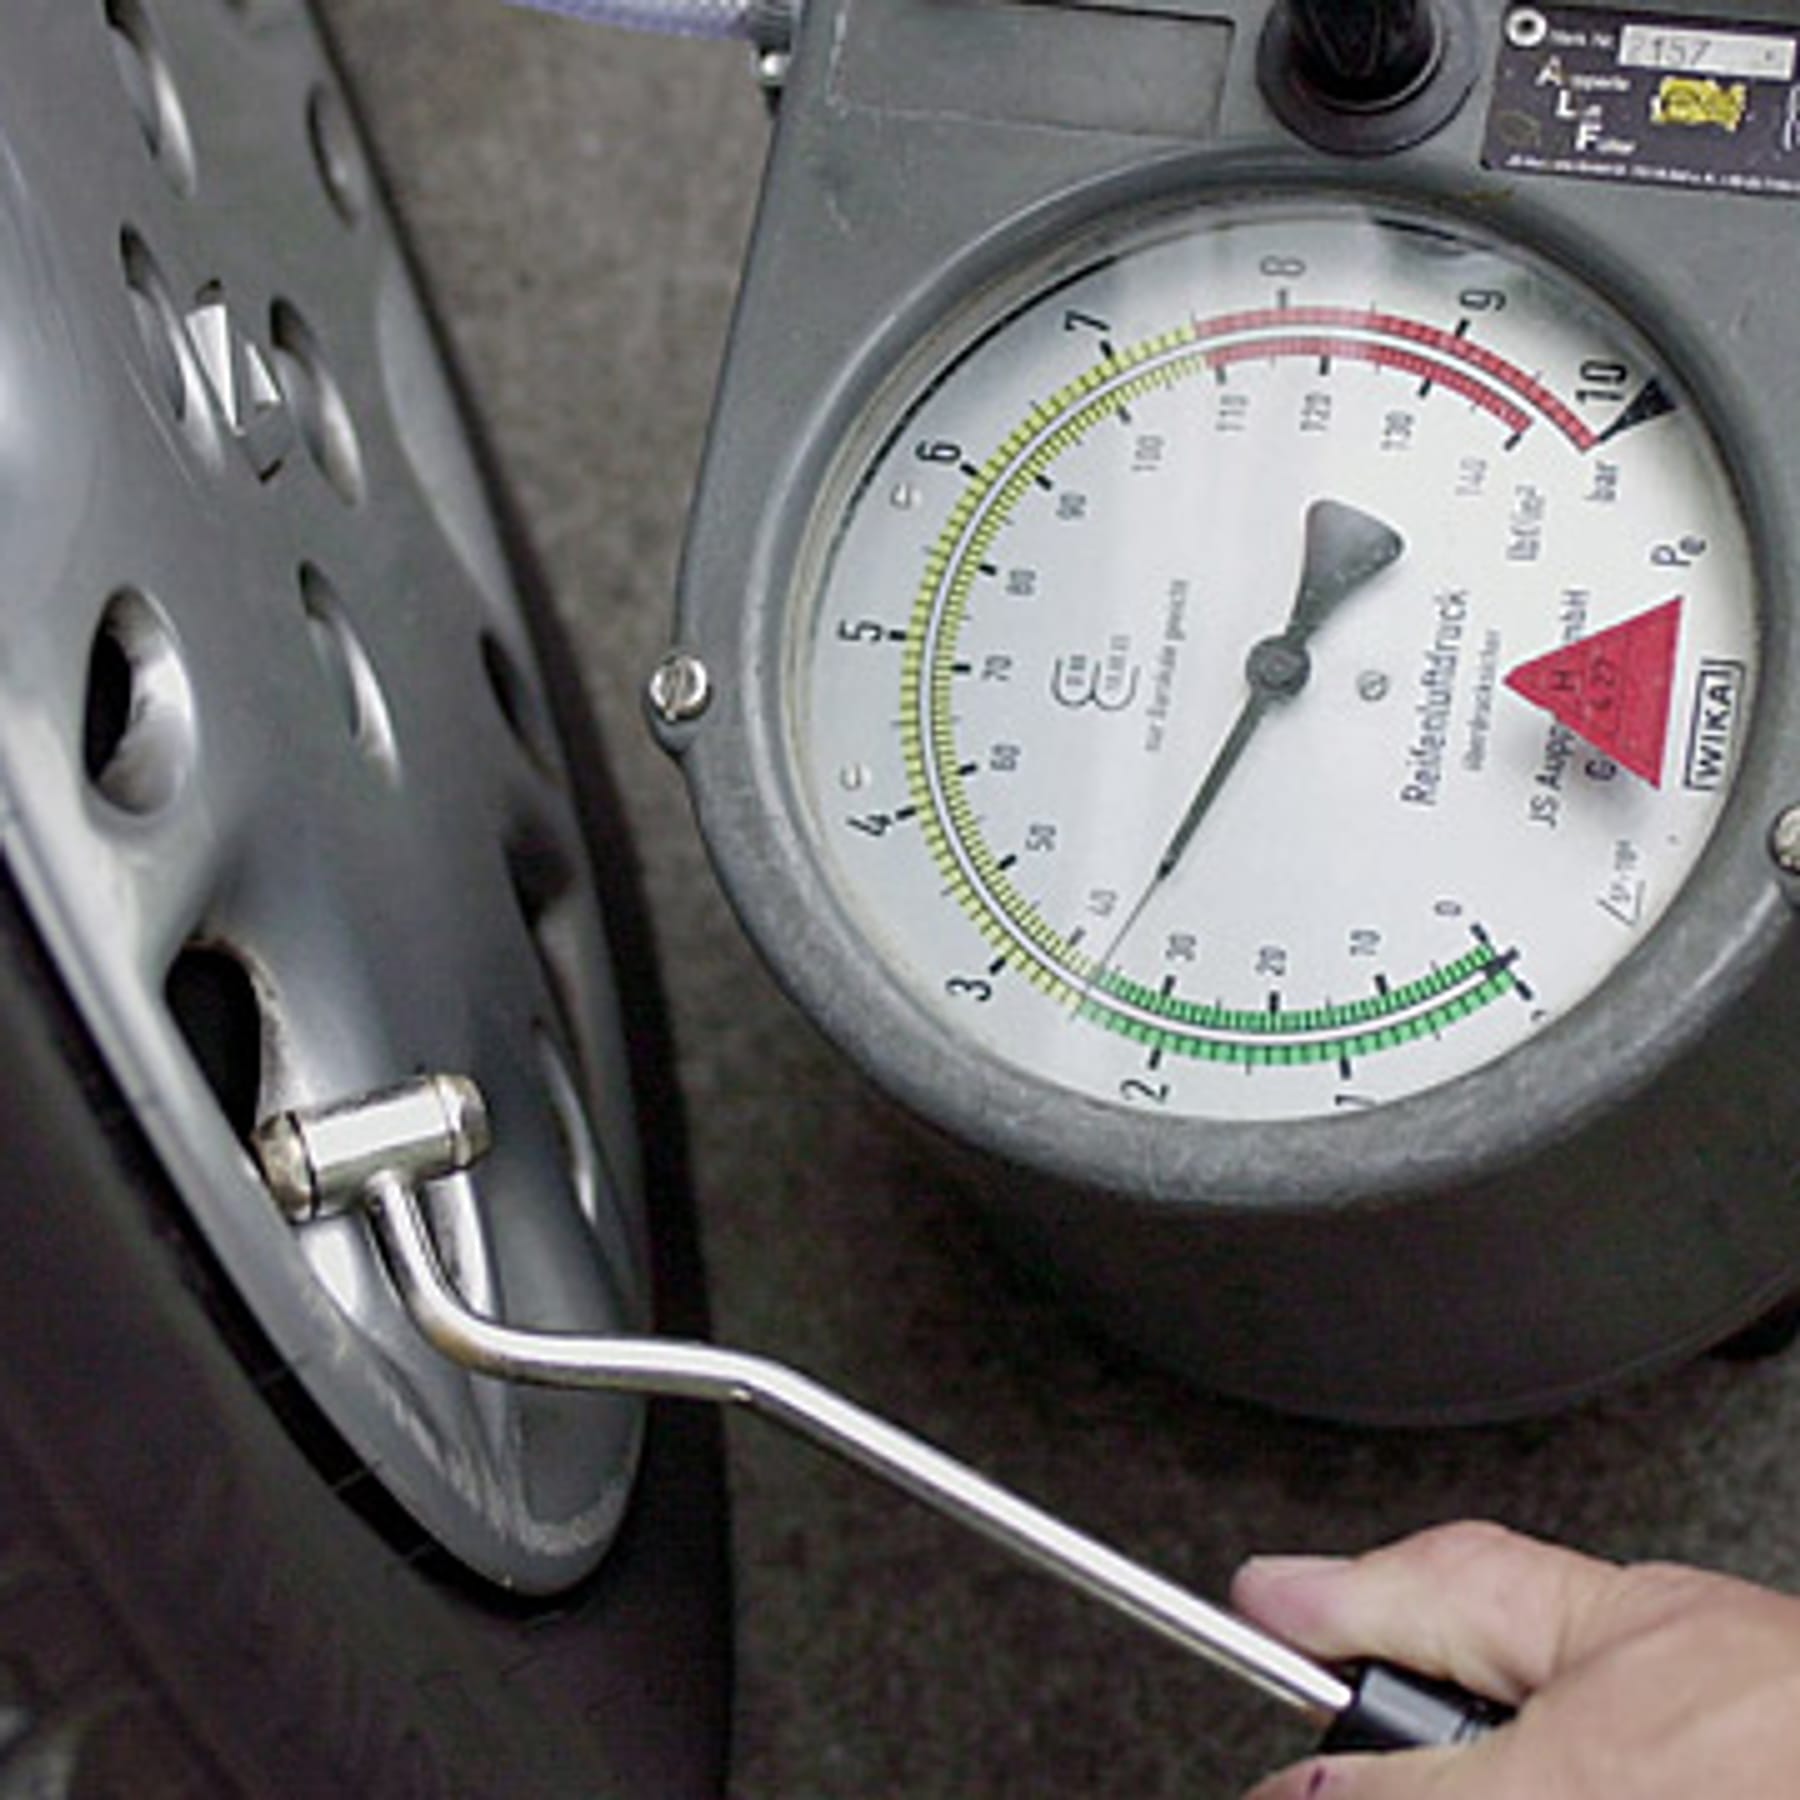 Ein gerät zur wartung von autoreifen an einer tankstelle automatische pumpe  zur überprüfung des reifenfüllstands